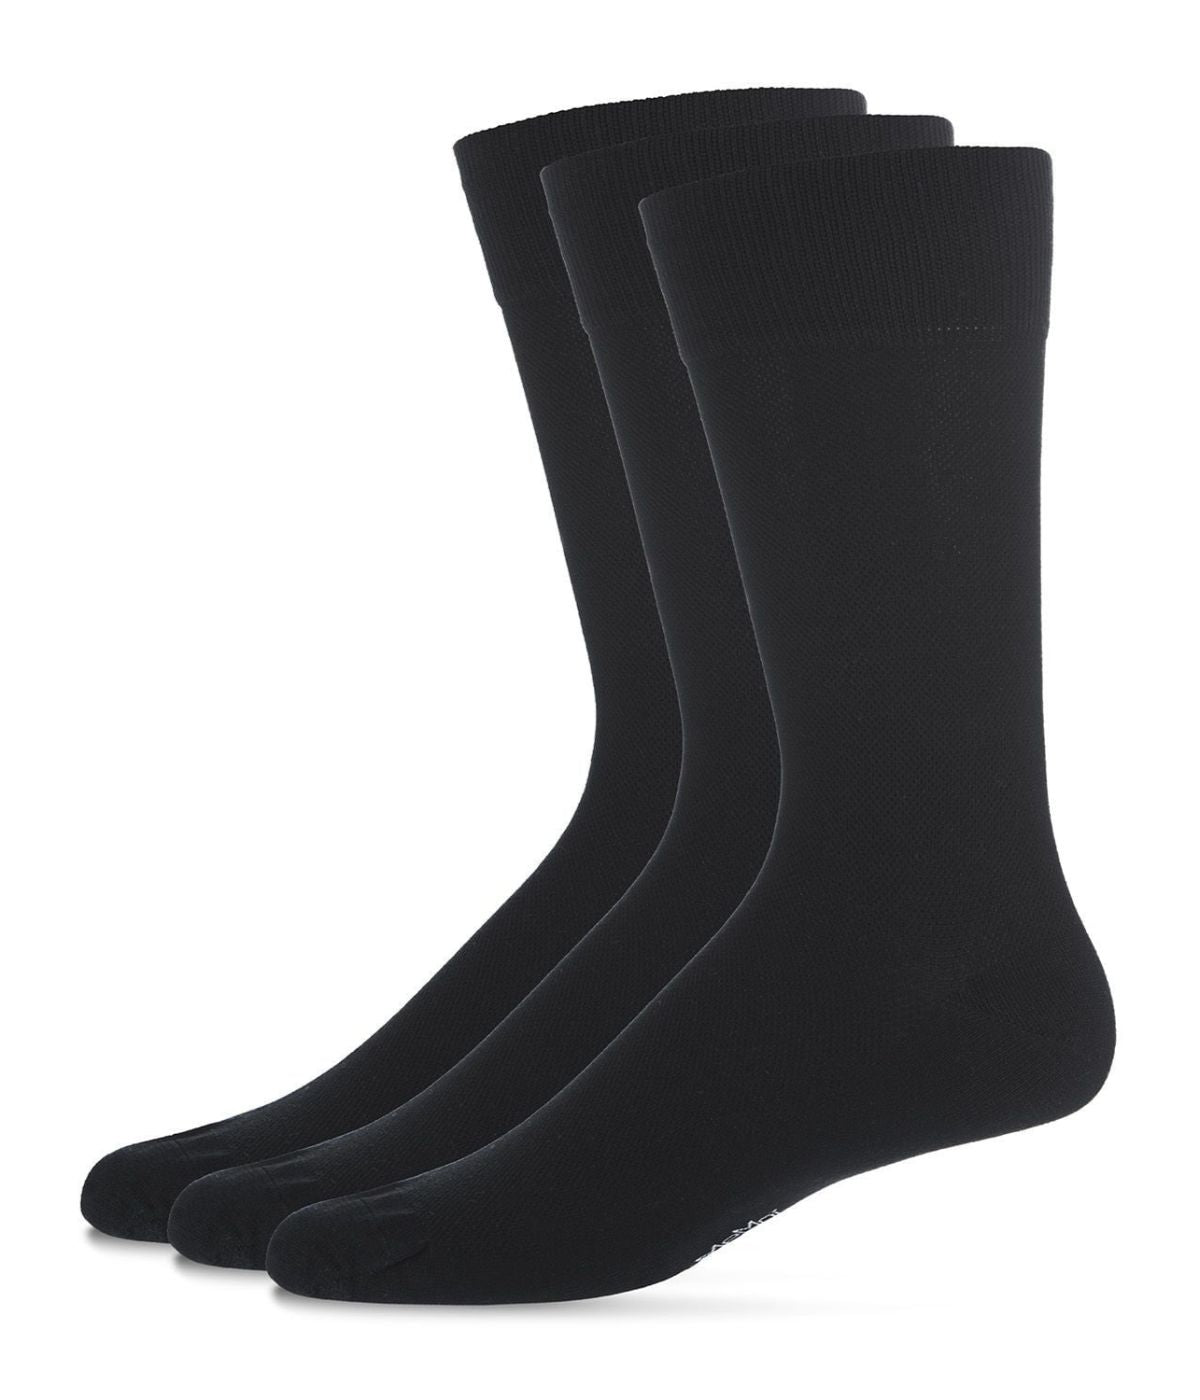 Pique Men's Mercerized Cotton Socks 3-Pack Black